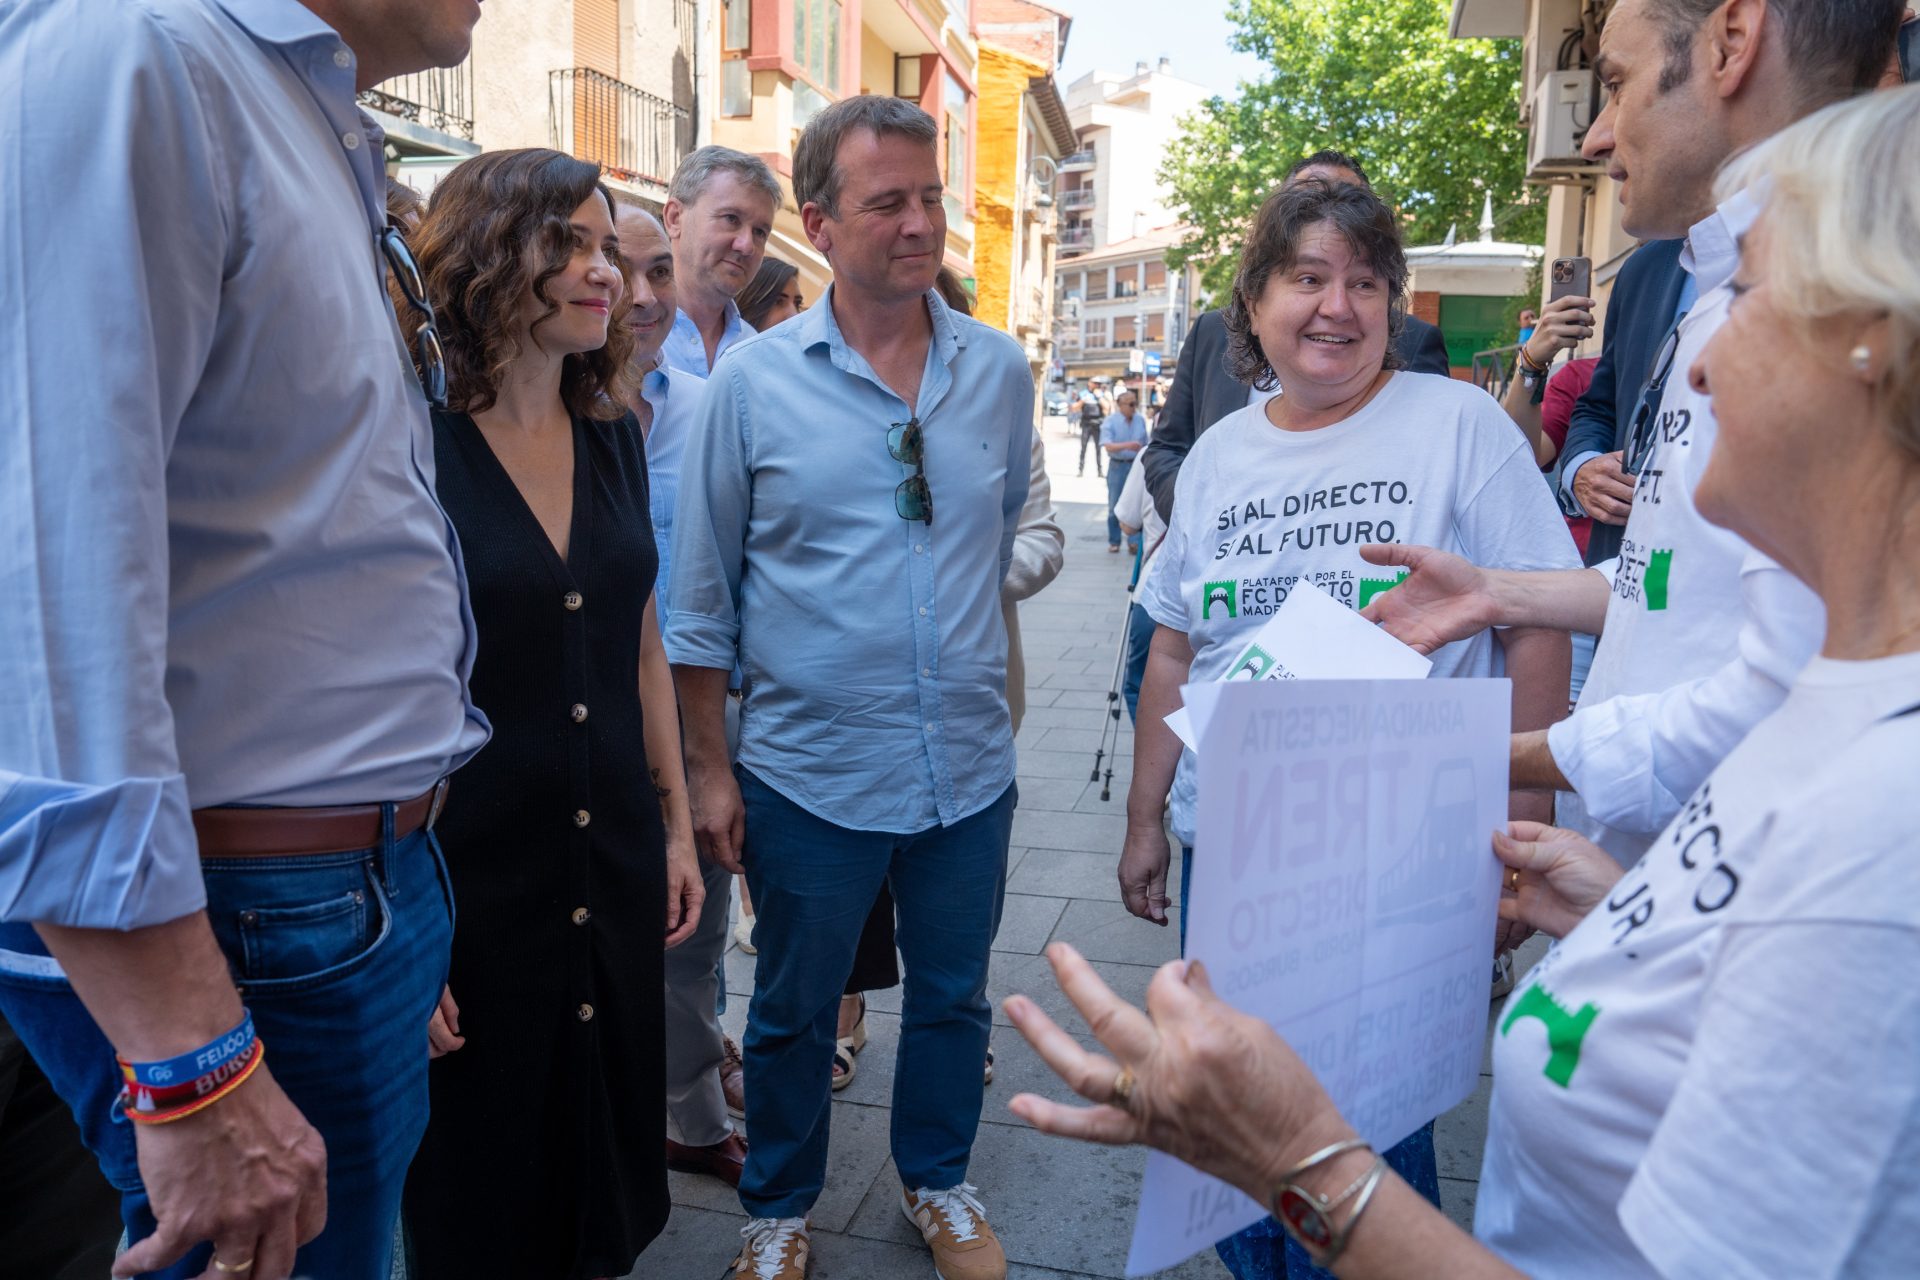 Ayuso apuesta por un PP de amplia mayoría frente a un PSOE encerrado que “solo divide”